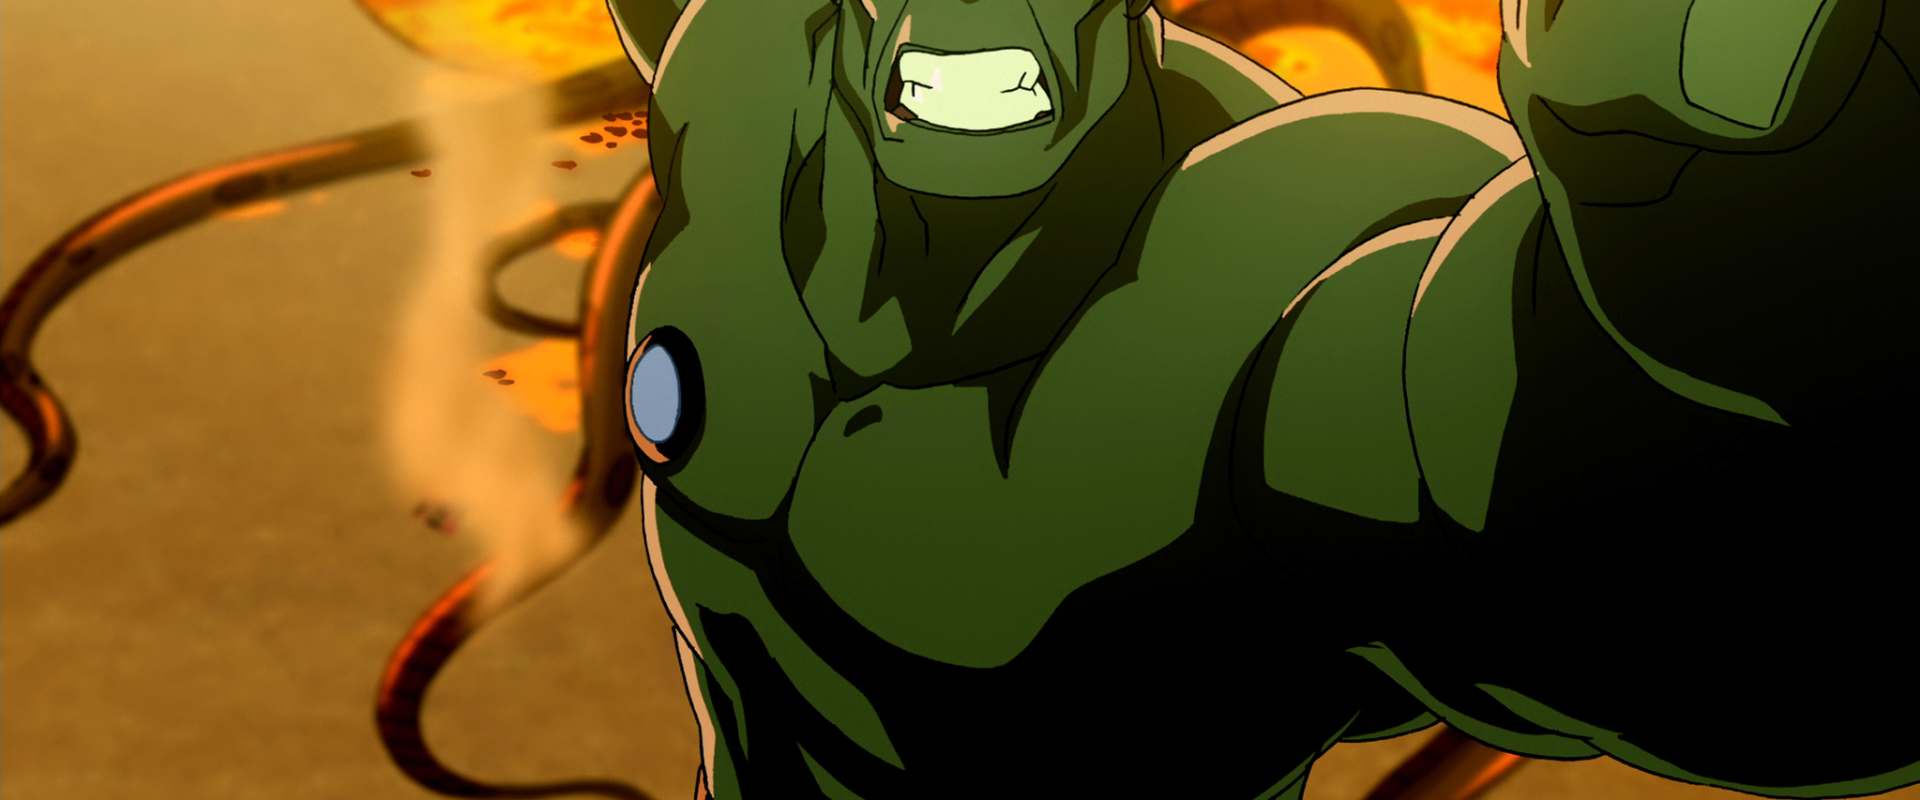 Watch Planet Hulk on Netflix Today! 